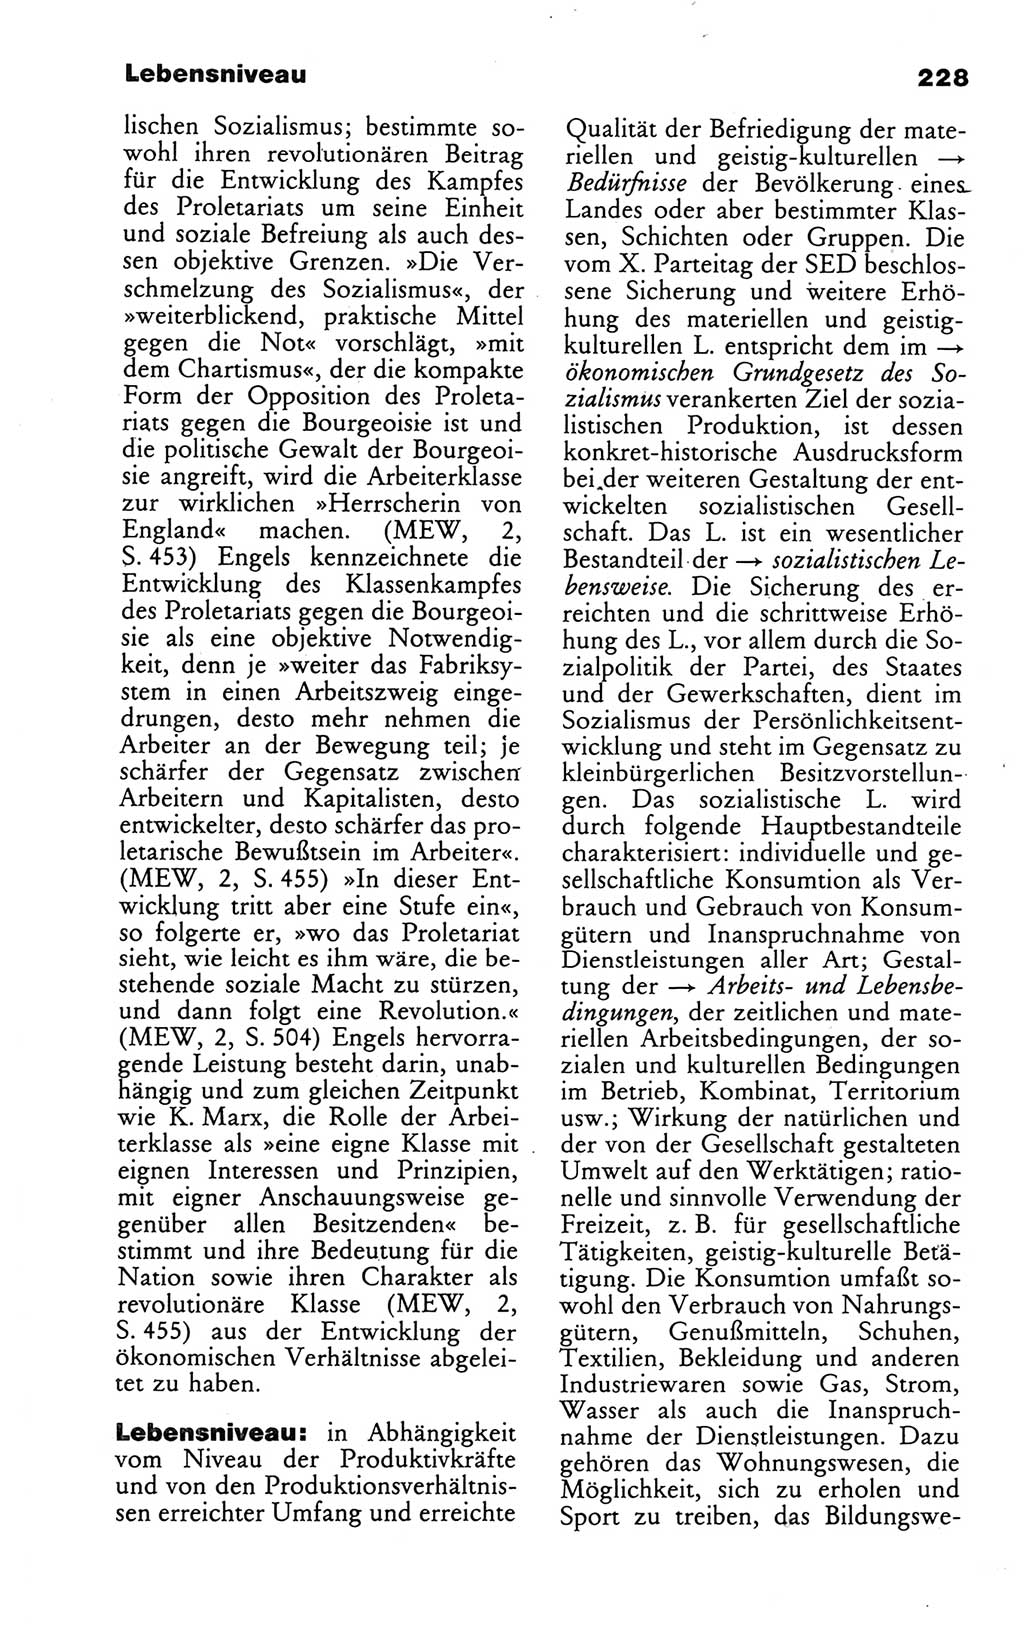 Wörterbuch des wissenschaftlichen Kommunismus [Deutsche Demokratische Republik (DDR)] 1986, Seite 228 (Wb. wiss. Komm. DDR 1986, S. 228)